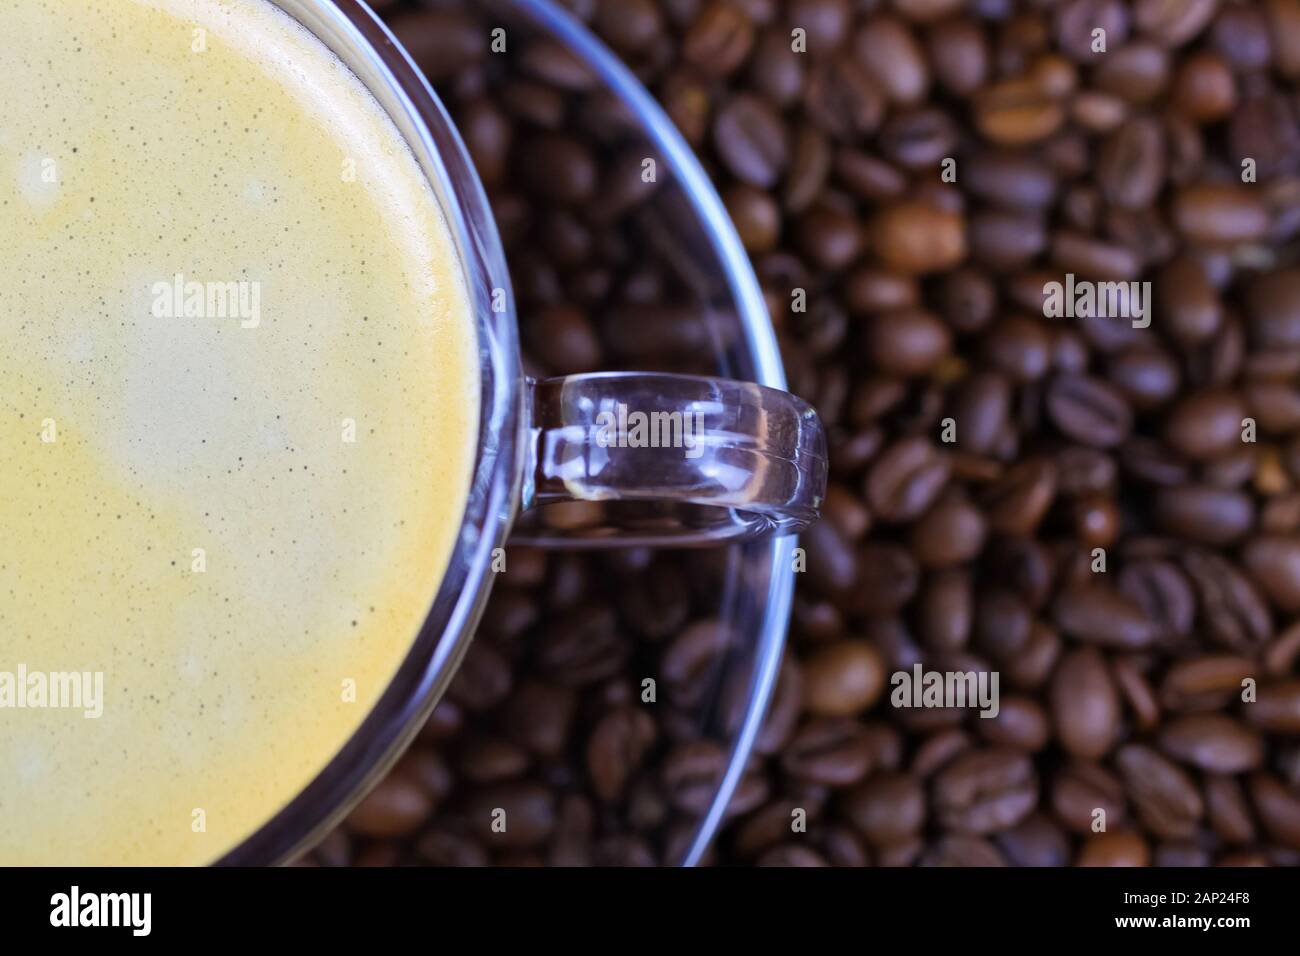 Isolierte halb transparente Kaffee Tasse griff auf Glas Untertasse mit Cafe Crema auf unzähligen gerösteten Bohnen verschwommenen Hintergrund Stockfoto